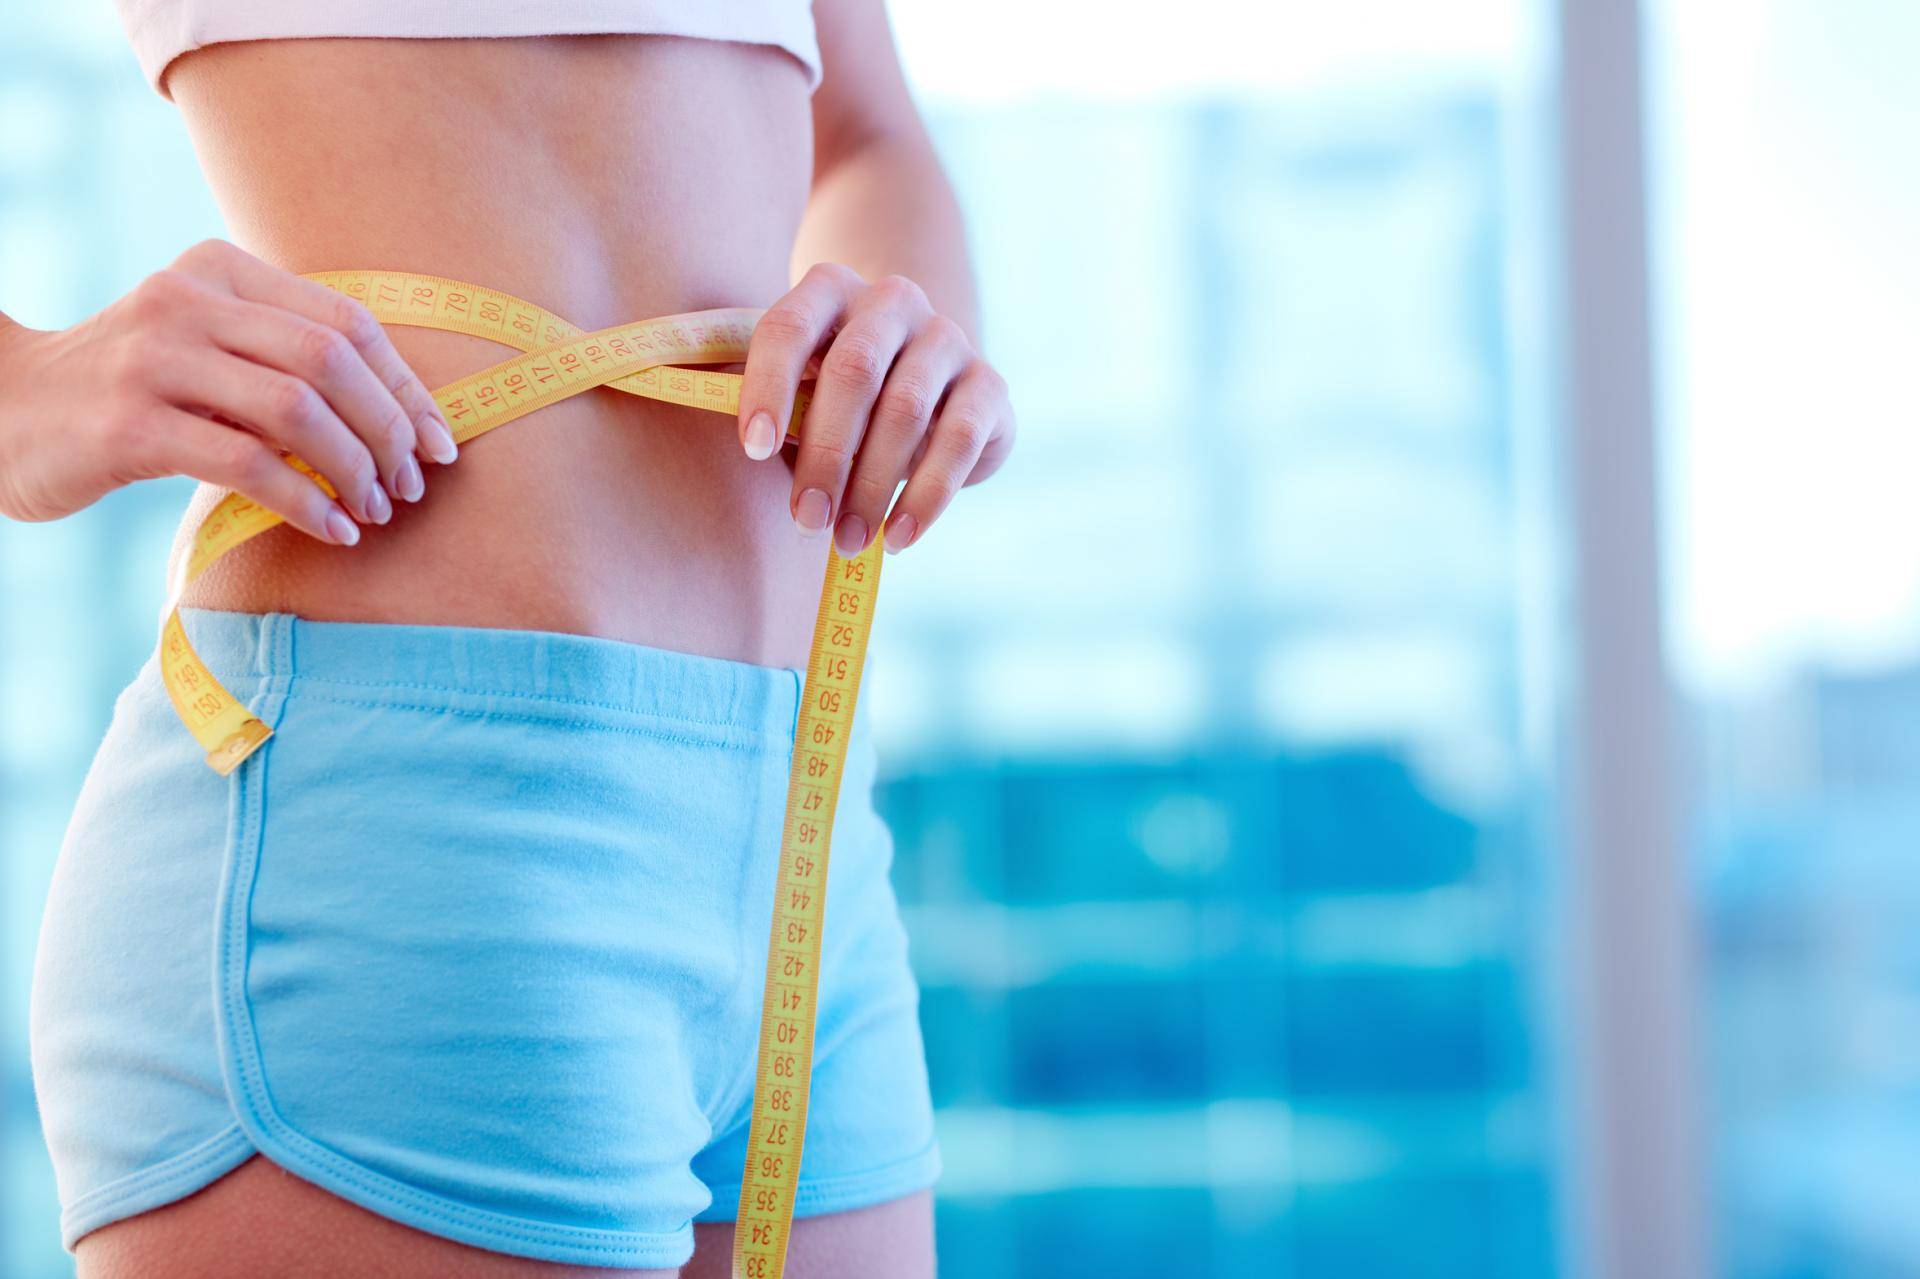 "талия больше 80 сантиметров — это ожирение". как бороться с лишним весом не во вред здоровью